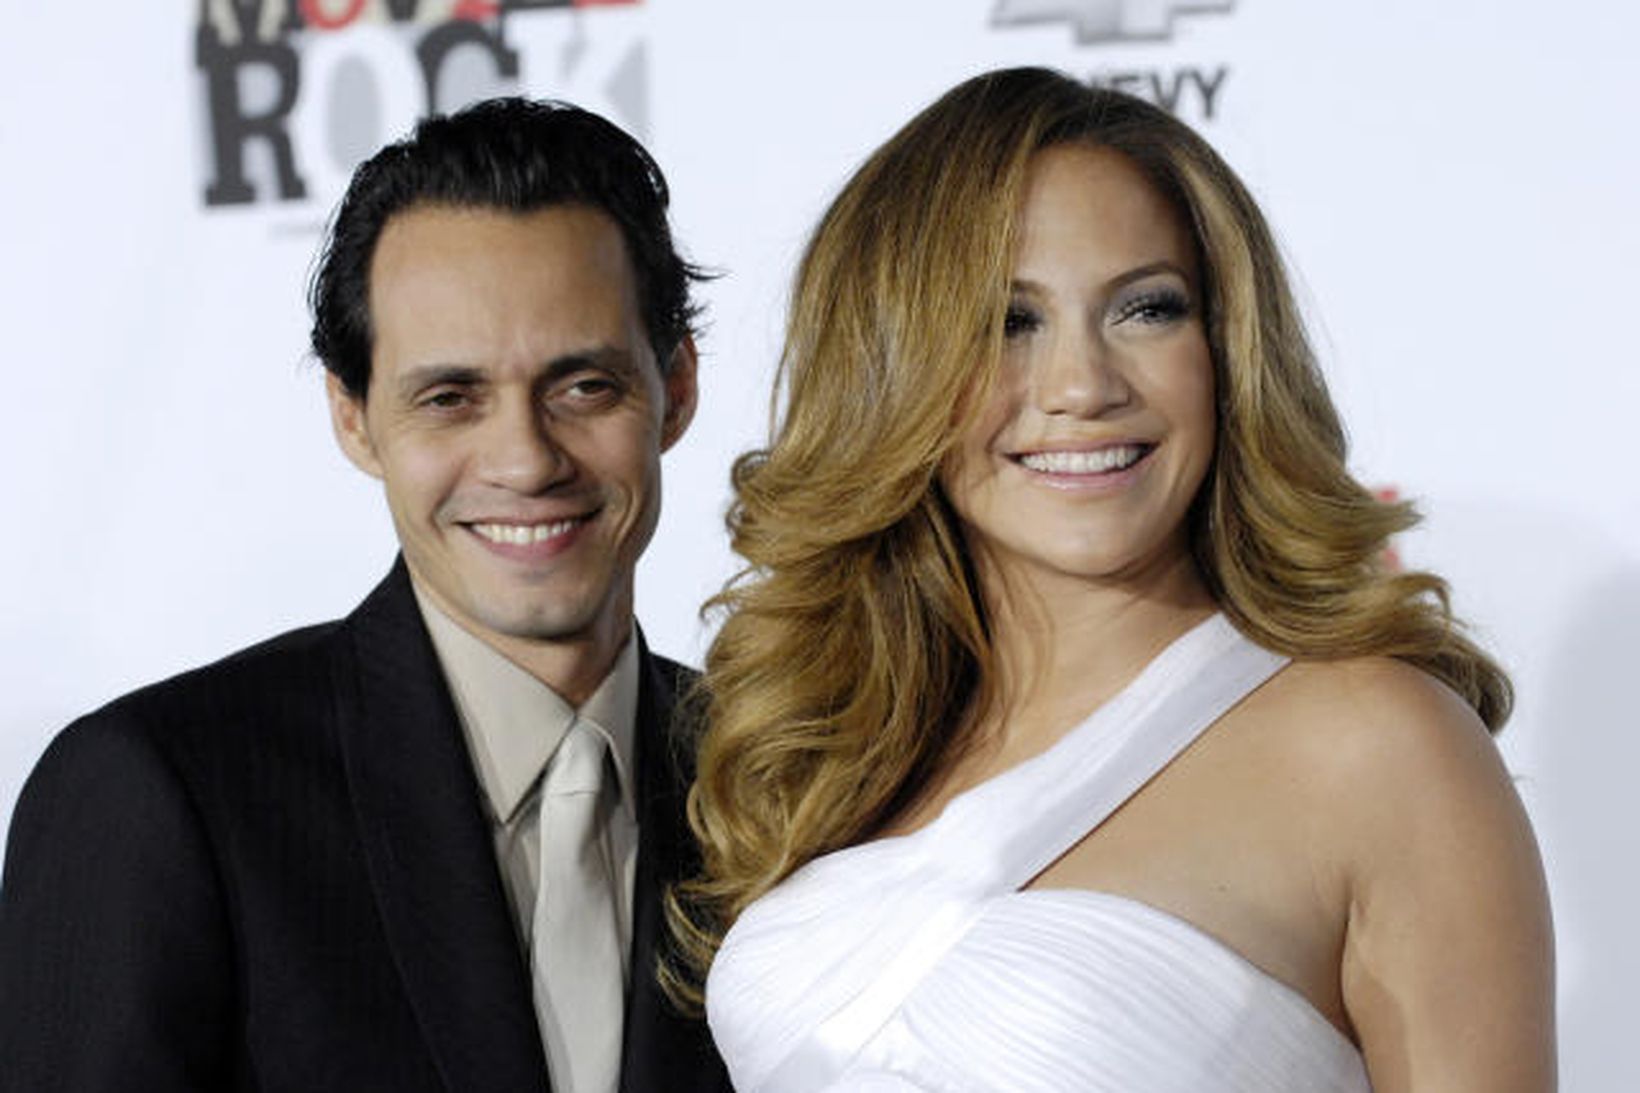 Marc Anthony og Jennifer Lopez nefndu tvíburana sína Max og …